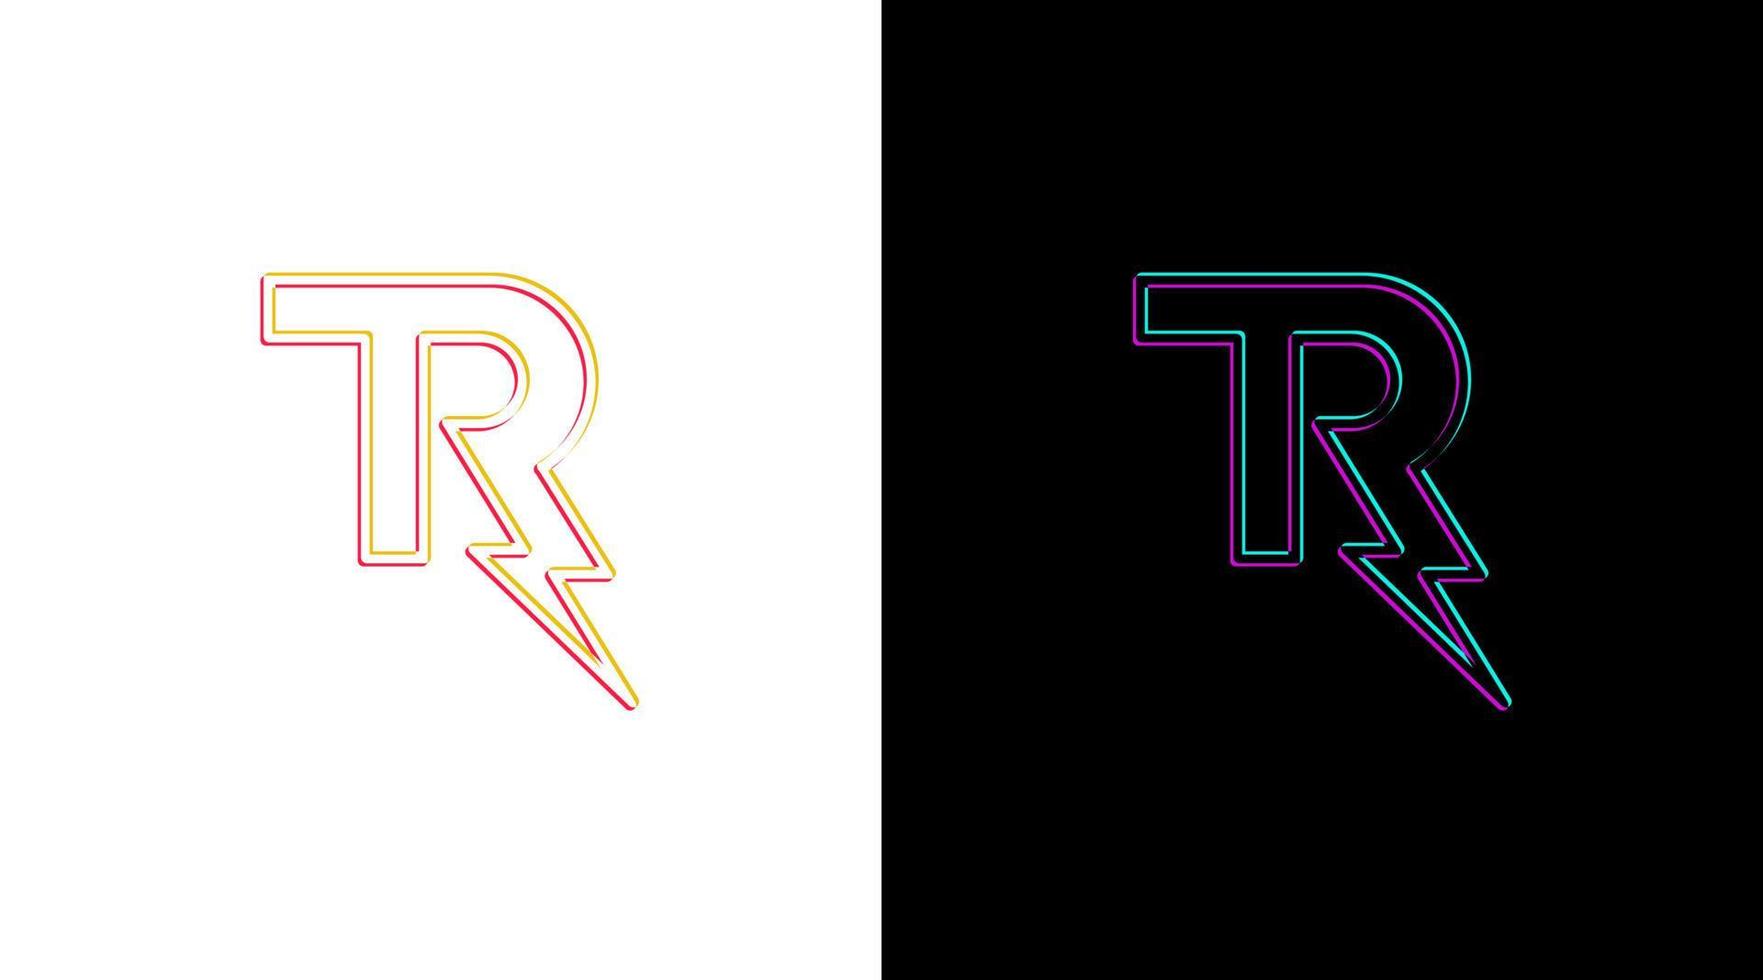 Letter tr logo and bolt lightning thunder monogram icon Design template vector